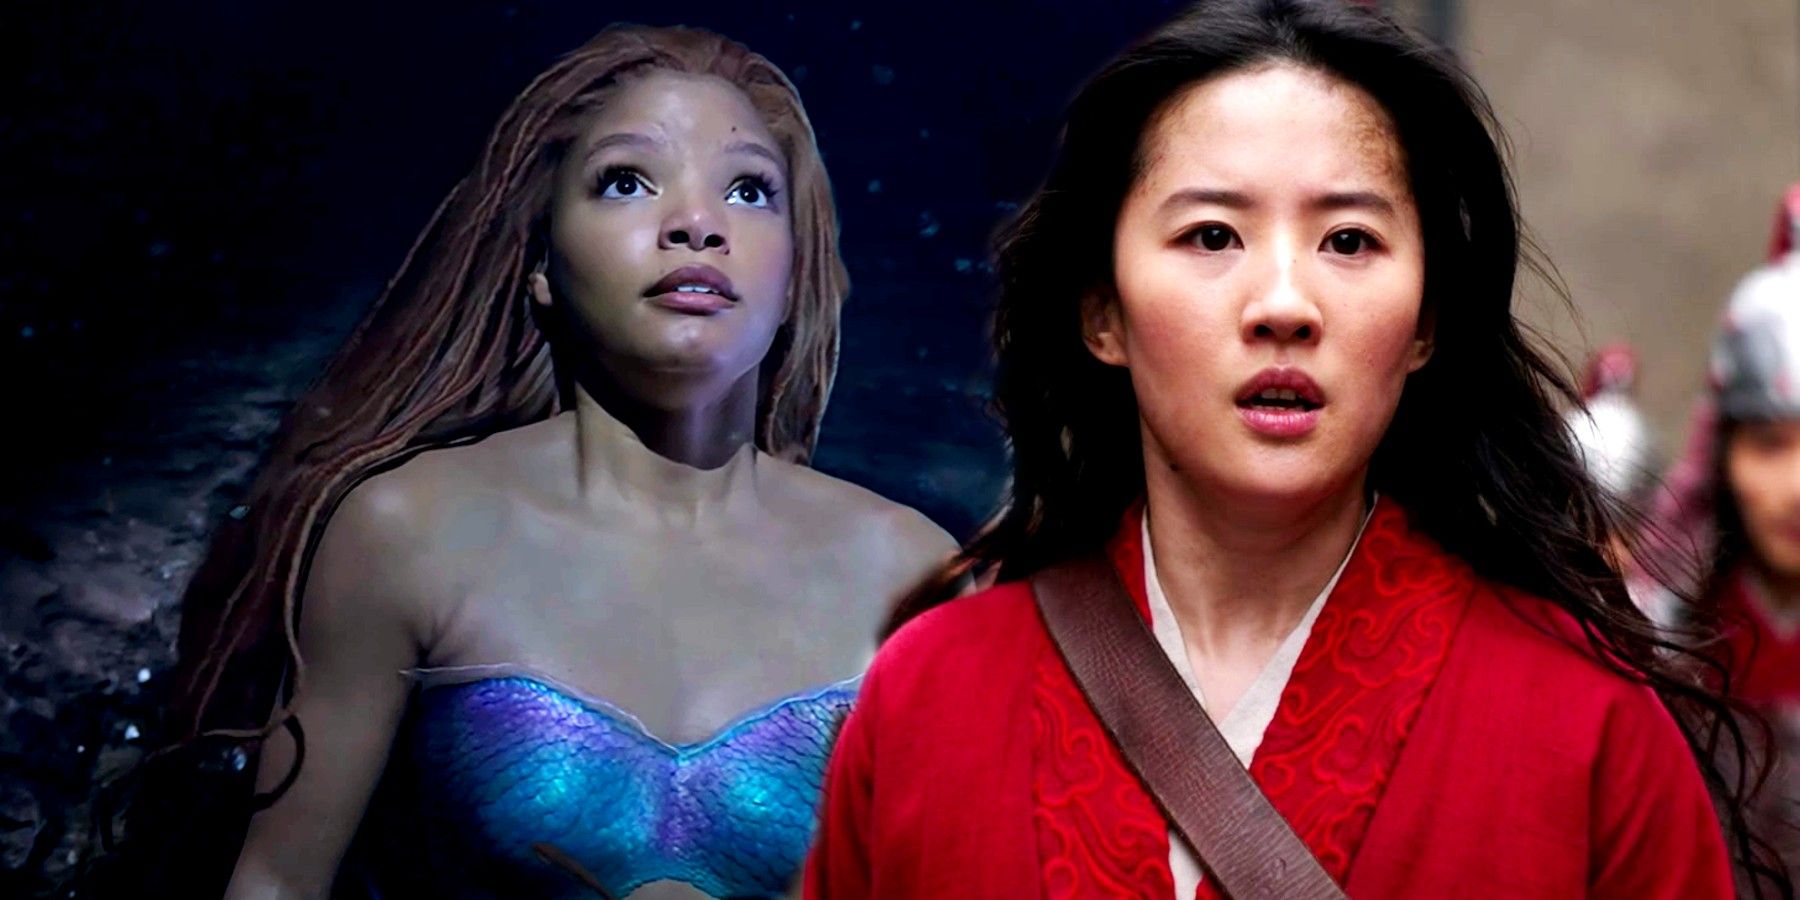 La puntuación de Rotten Tomatoes de Live-Action Little Mermaid cae justo debajo del remake de Mulan